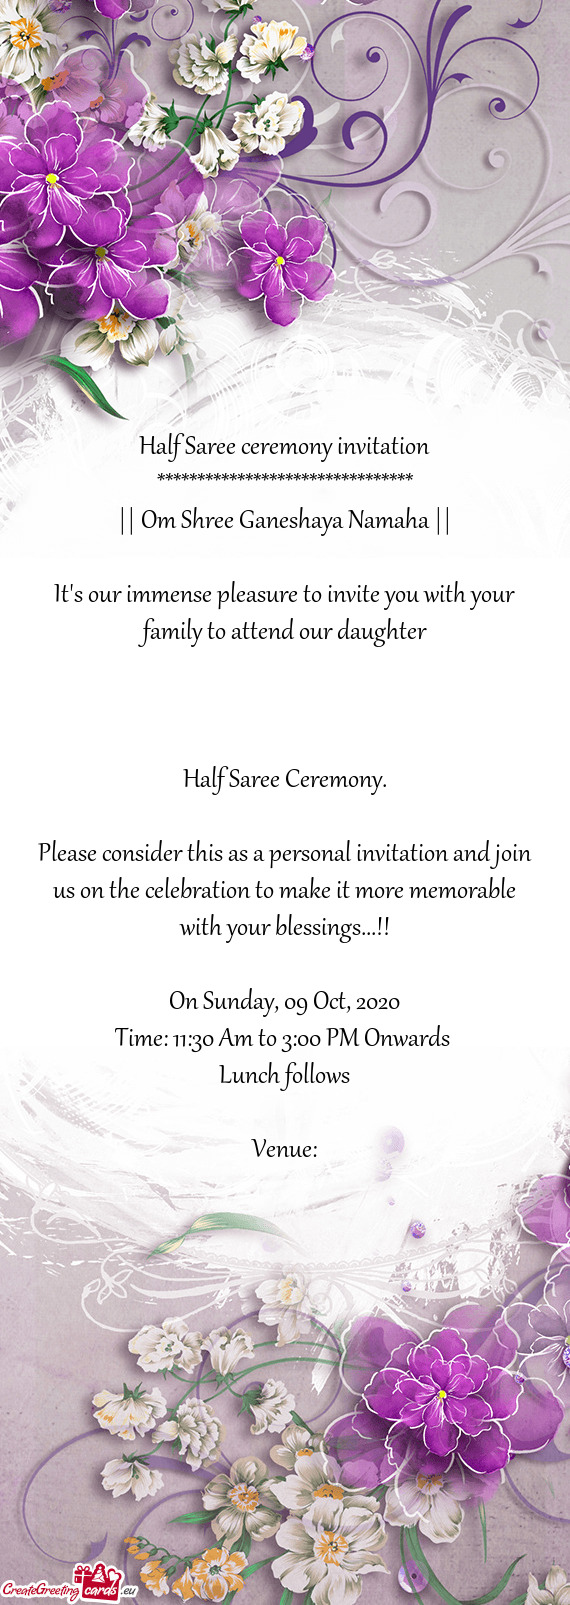 Half Saree ceremony invitation ******************************** || Om Shree Ganeshaya Namaha ||